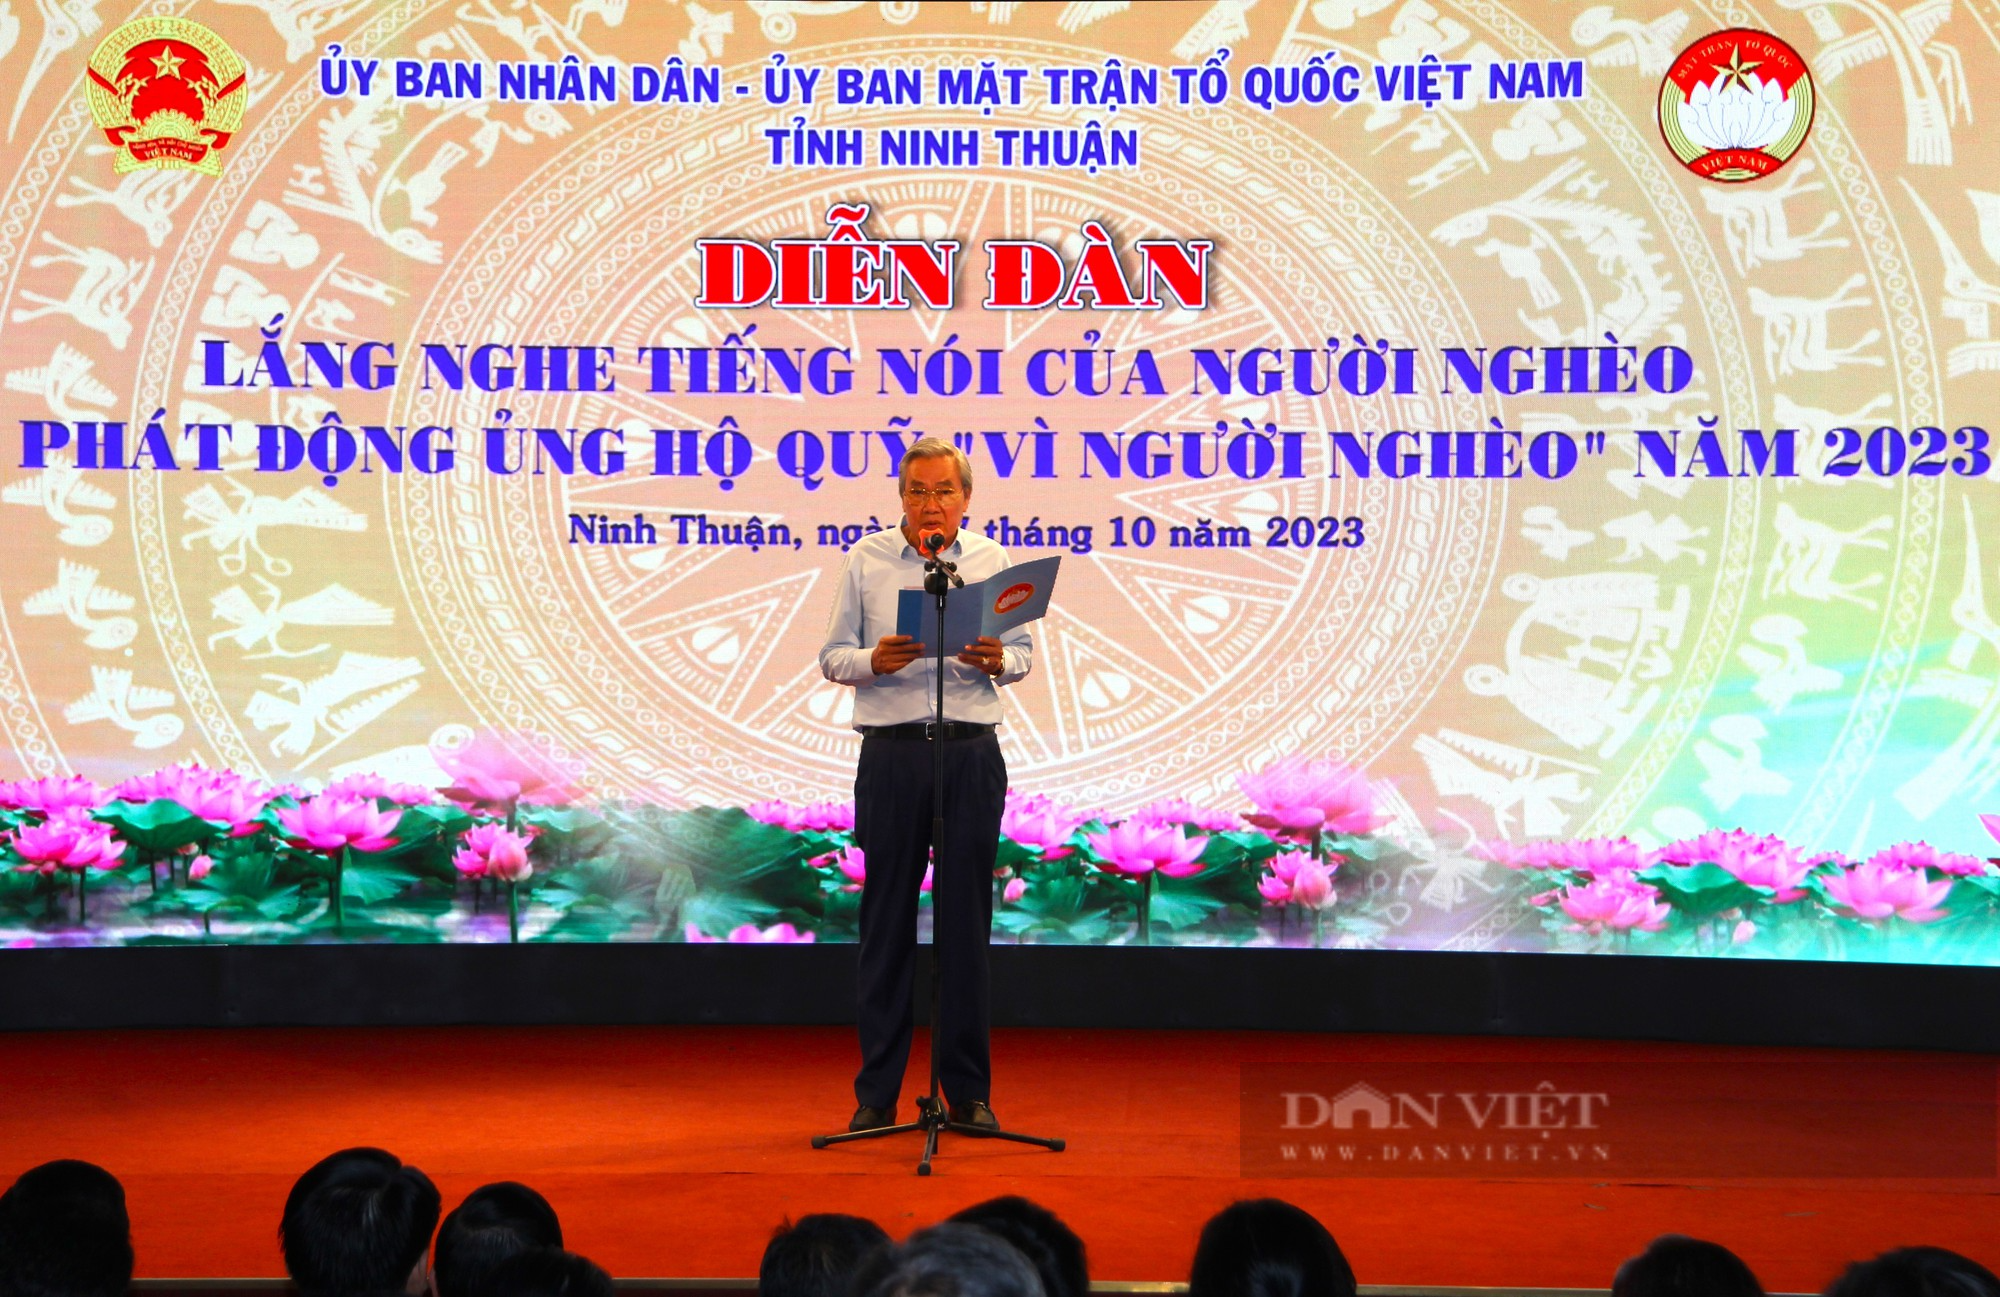 Diễn đàn “Lắng nghe tiếng nói của người nghèo” ở Ninh Thuận - Ảnh 4.